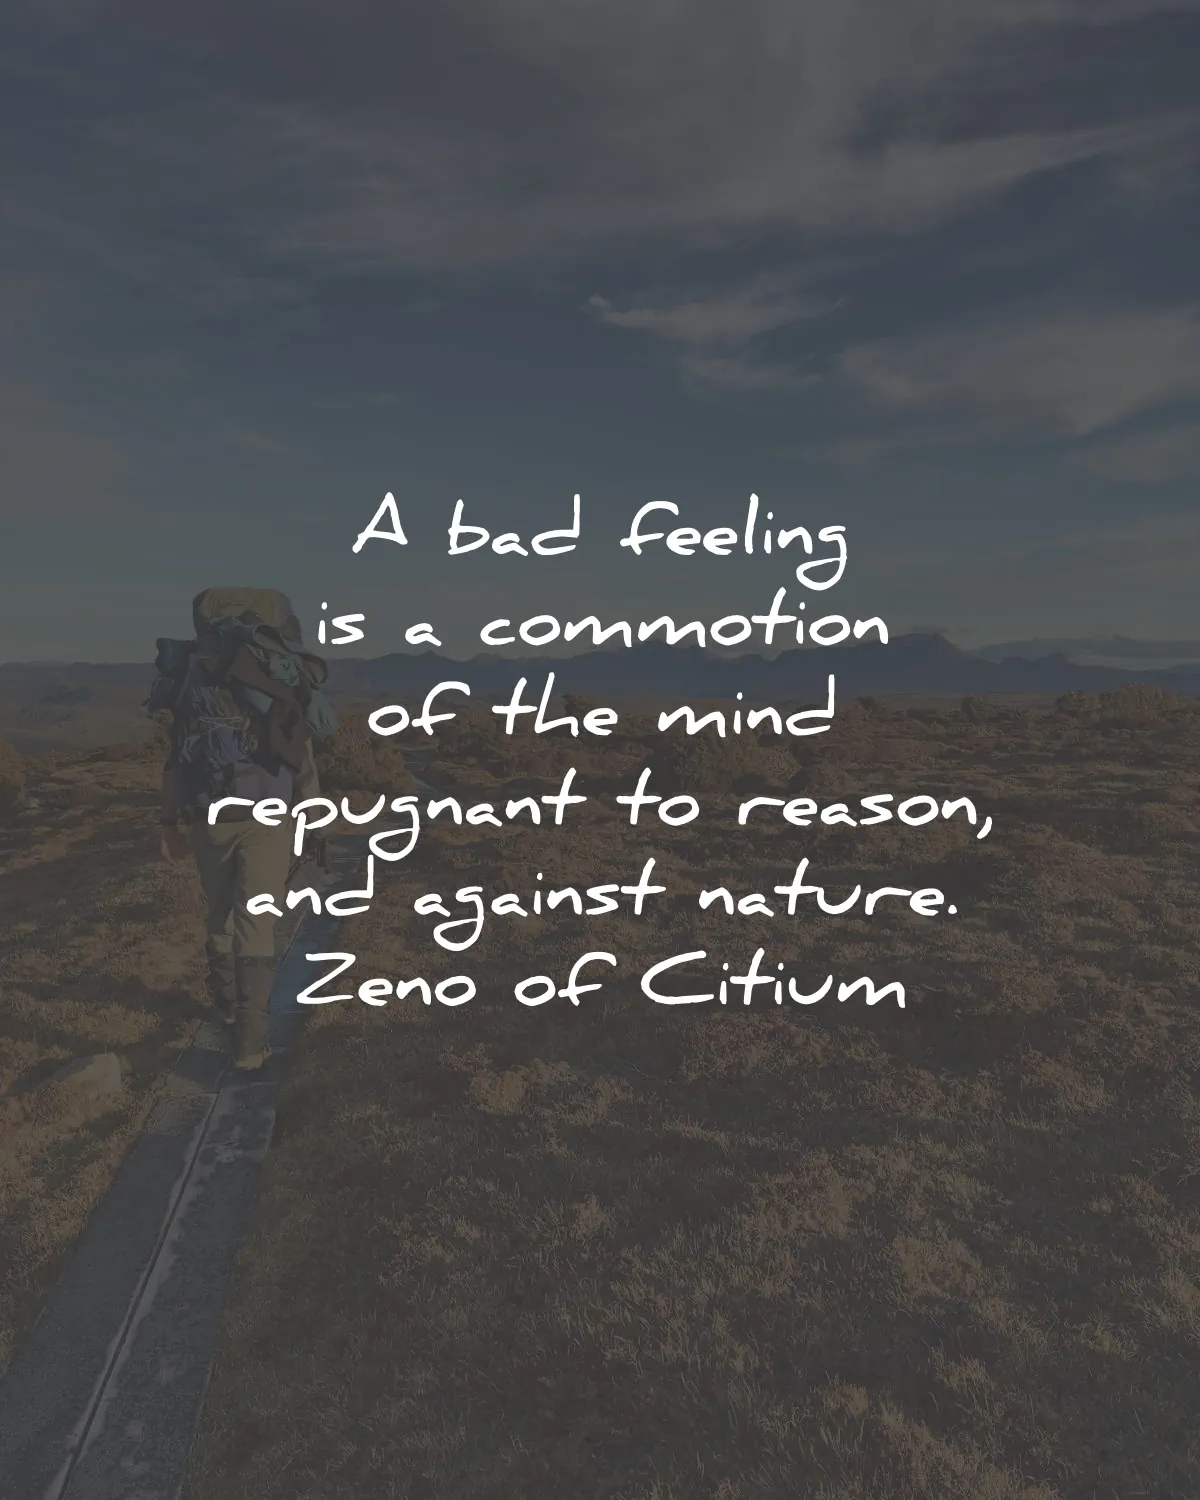 zeno of citium quotes bad feeling commotion mind repugnant reason nature wisdom